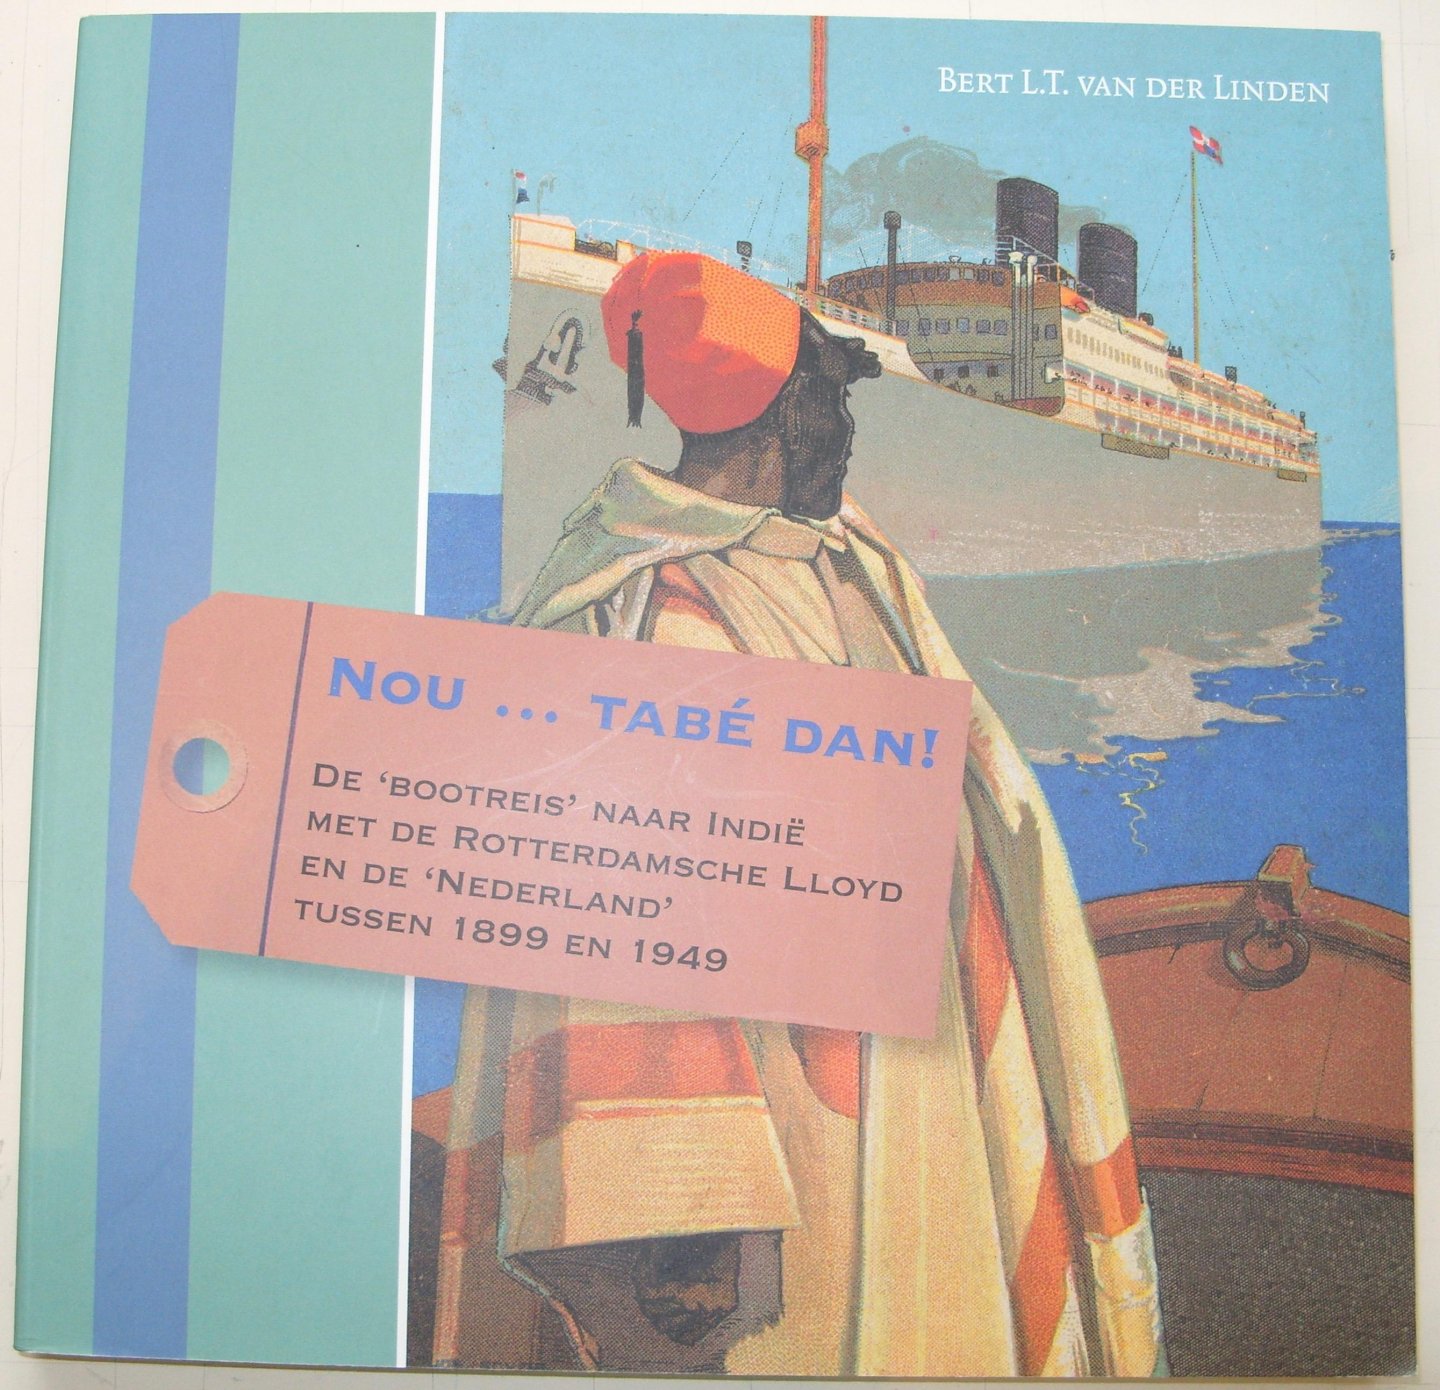 Linden, Bert. L.T. van der. - Nou... tabé dan! De bootreis naar Indië met de Rotterdamsche Lloyd en de Nederland tussen 1899 en 1949.